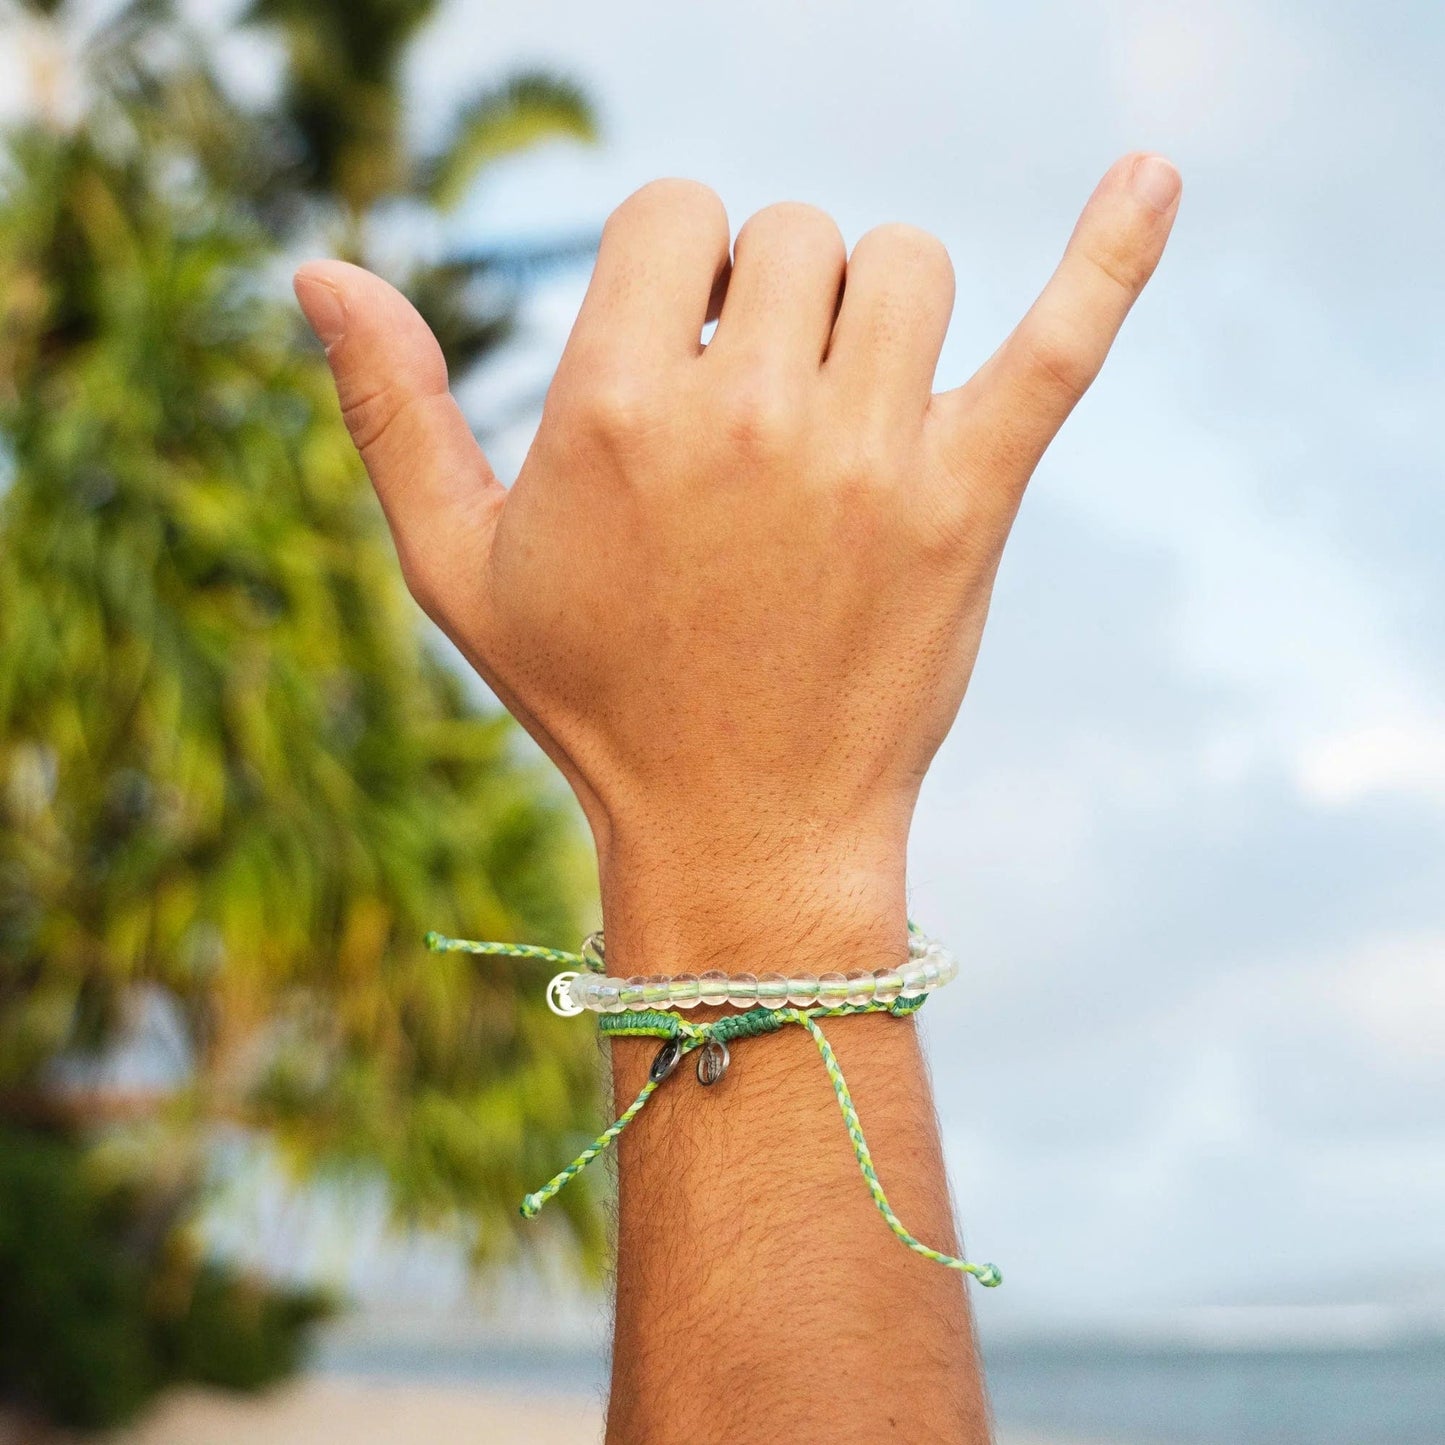 4Ocean bracelets - recycled plastic bracelet for charity